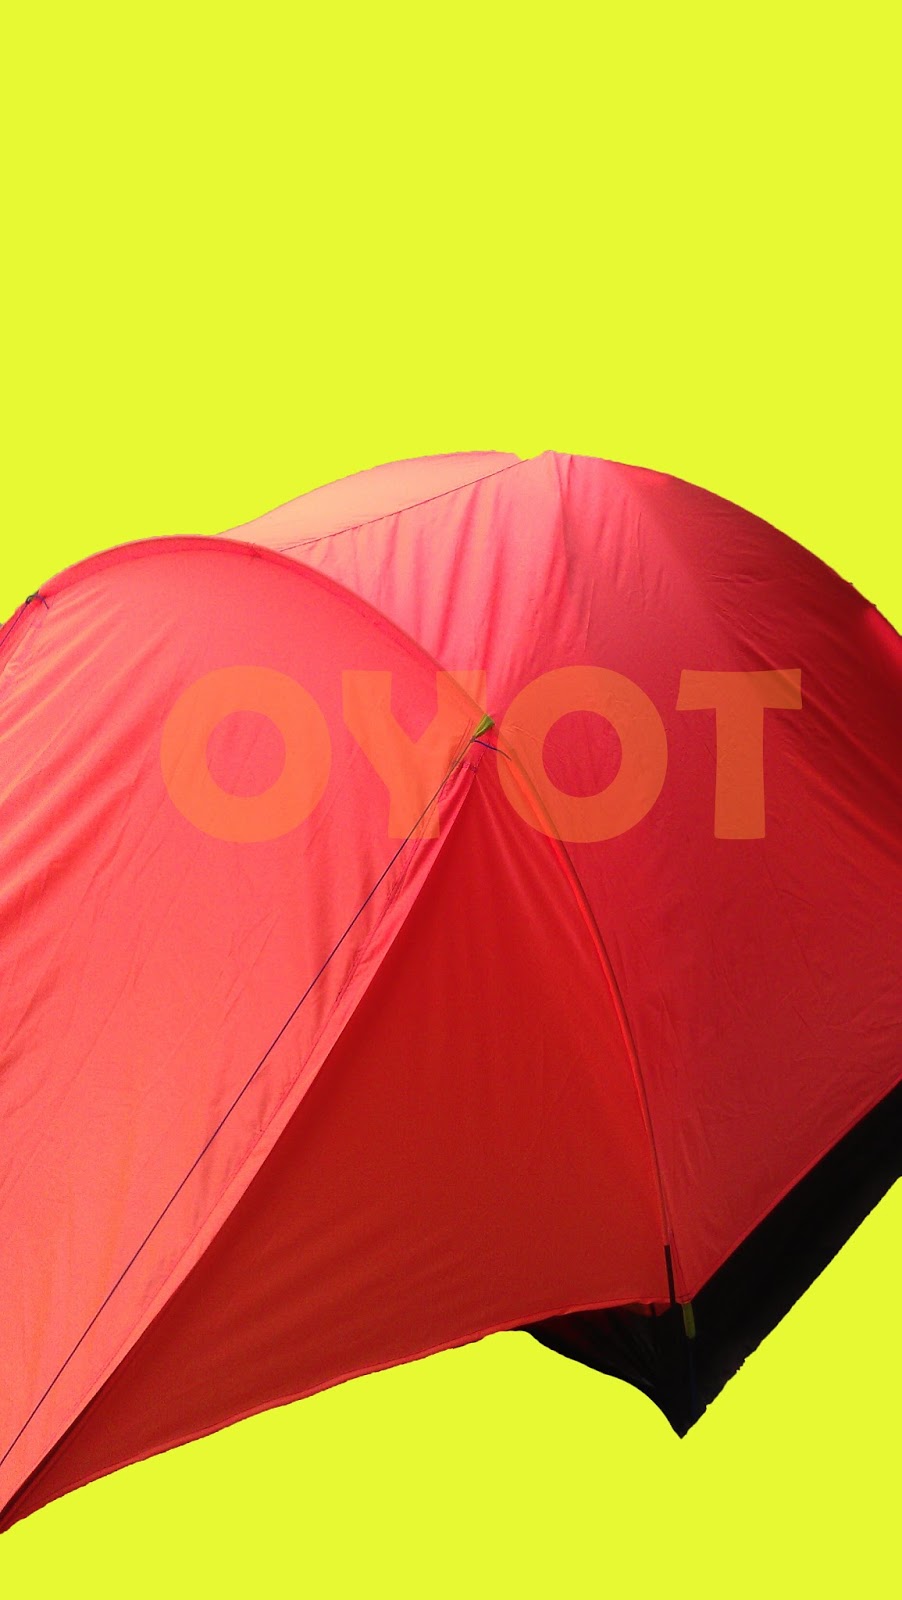 Sewa Tenda Camping Daerah Sidoarjo Persewaan Alat Outdoor Di Sidoarjo Tenda Dome Tas Carrier Sleeping Bag Kompor Windproof Senter Headlamp Nesting Trekking Pole